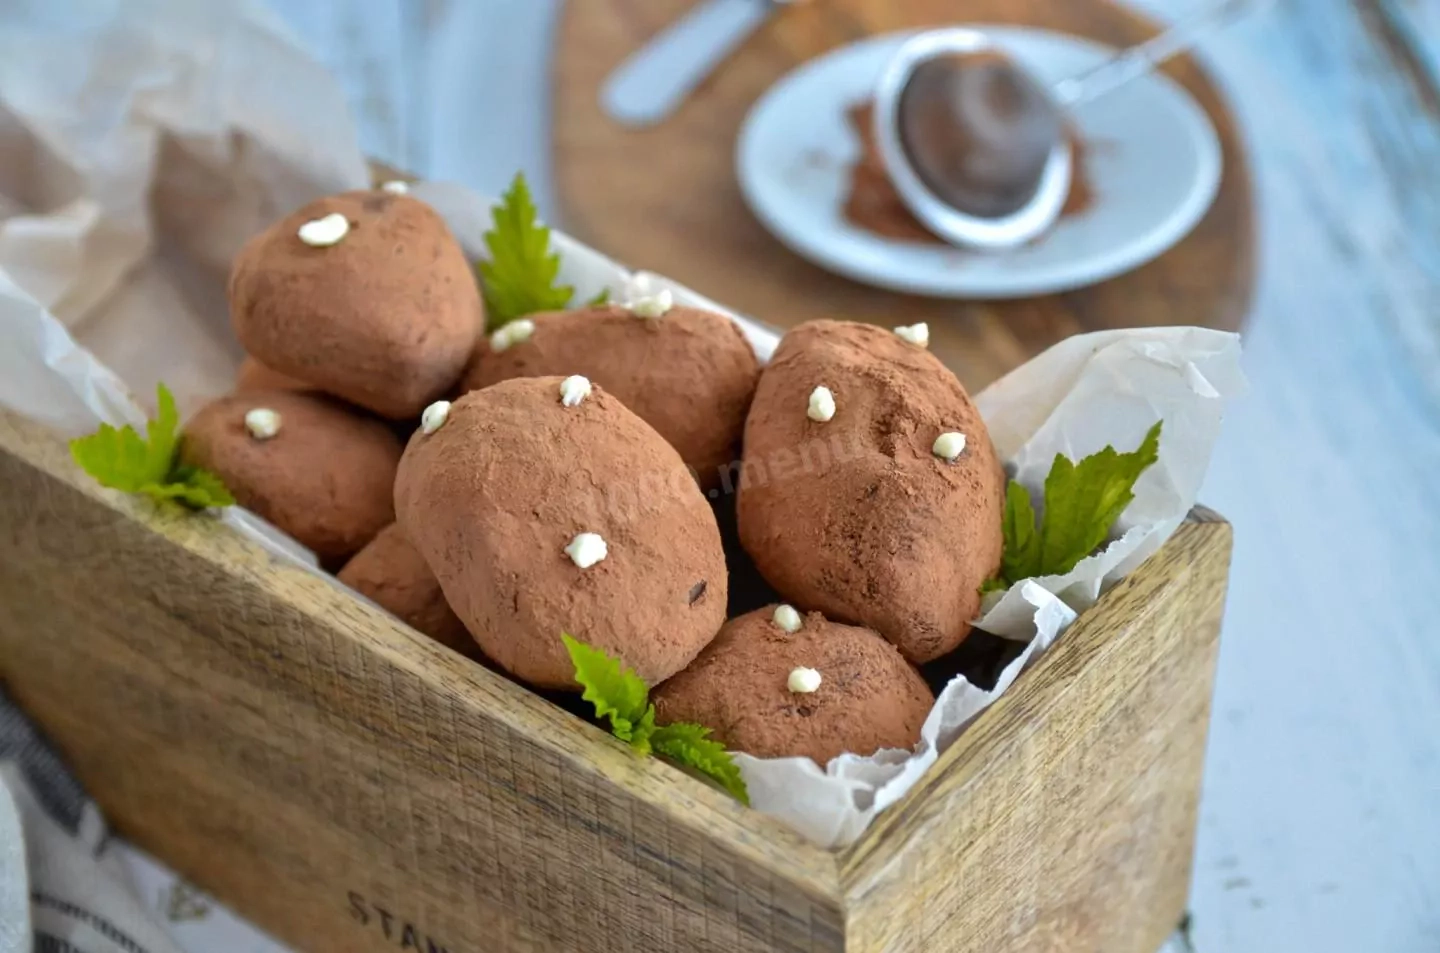 Ziemniaki z biszkopta czekoladowego - klaszyczne pierożki